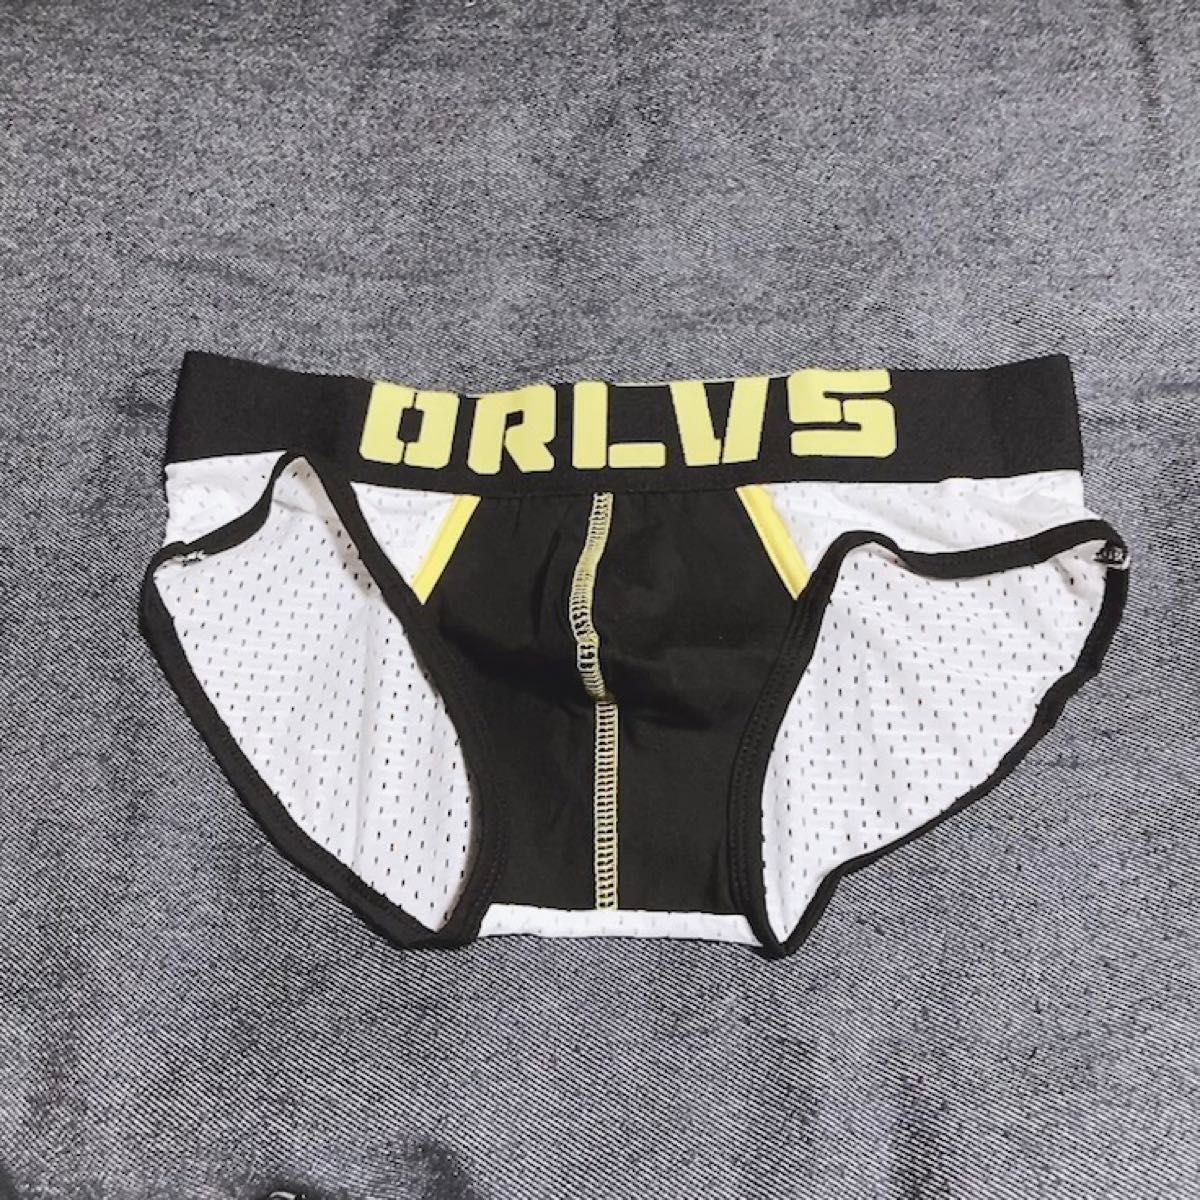 【ORLVS】ボクサー ブリーフ ブラック ホワイト イエロー メッシュ Mサイズ メンズ